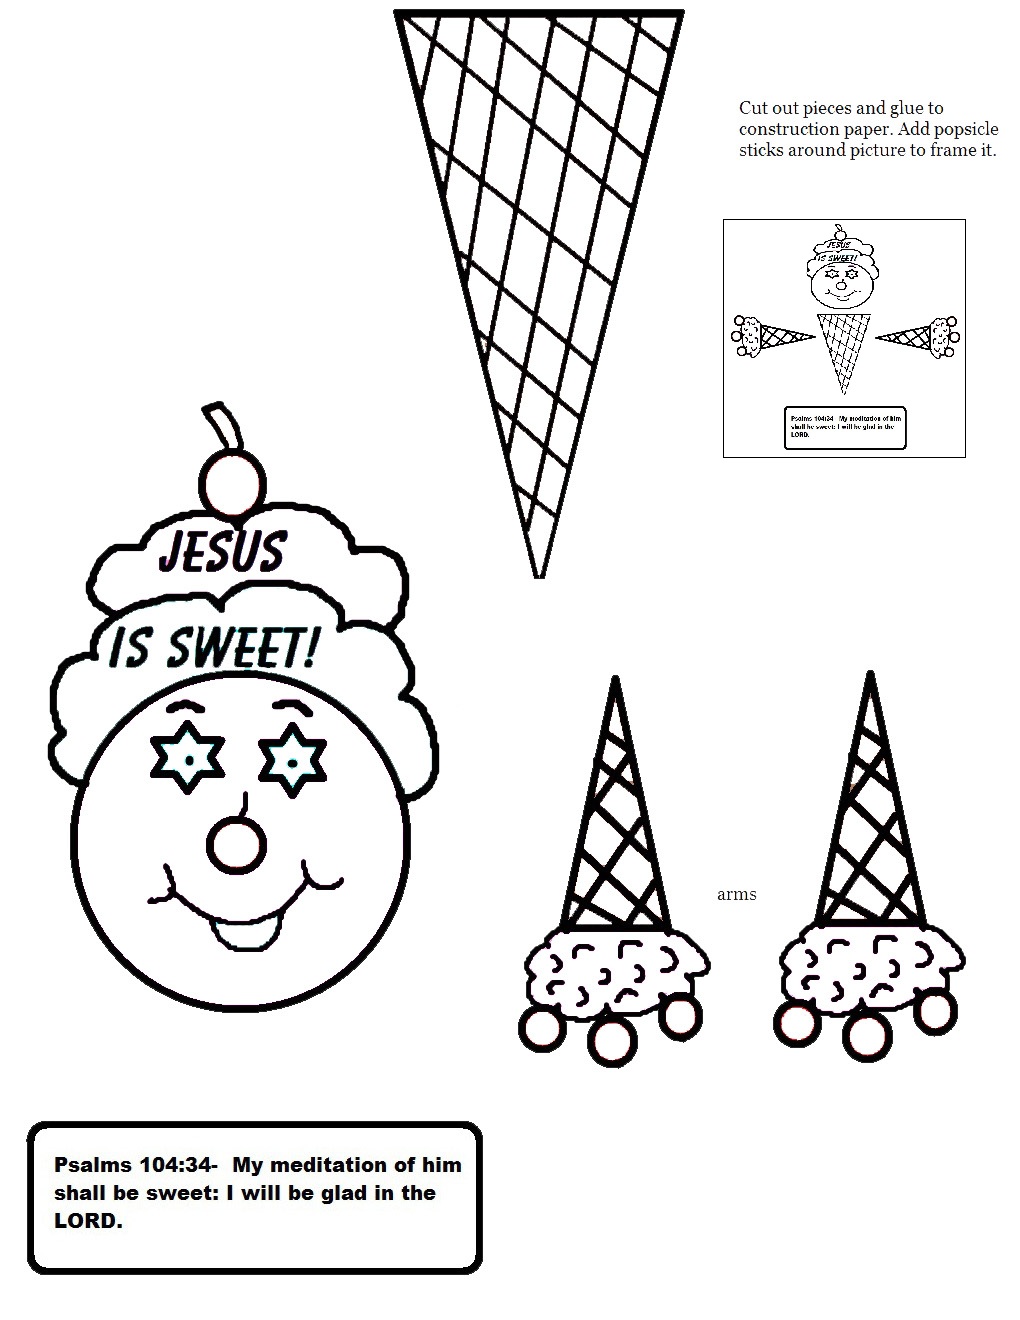 Black and white empty ice cream cone clipart 